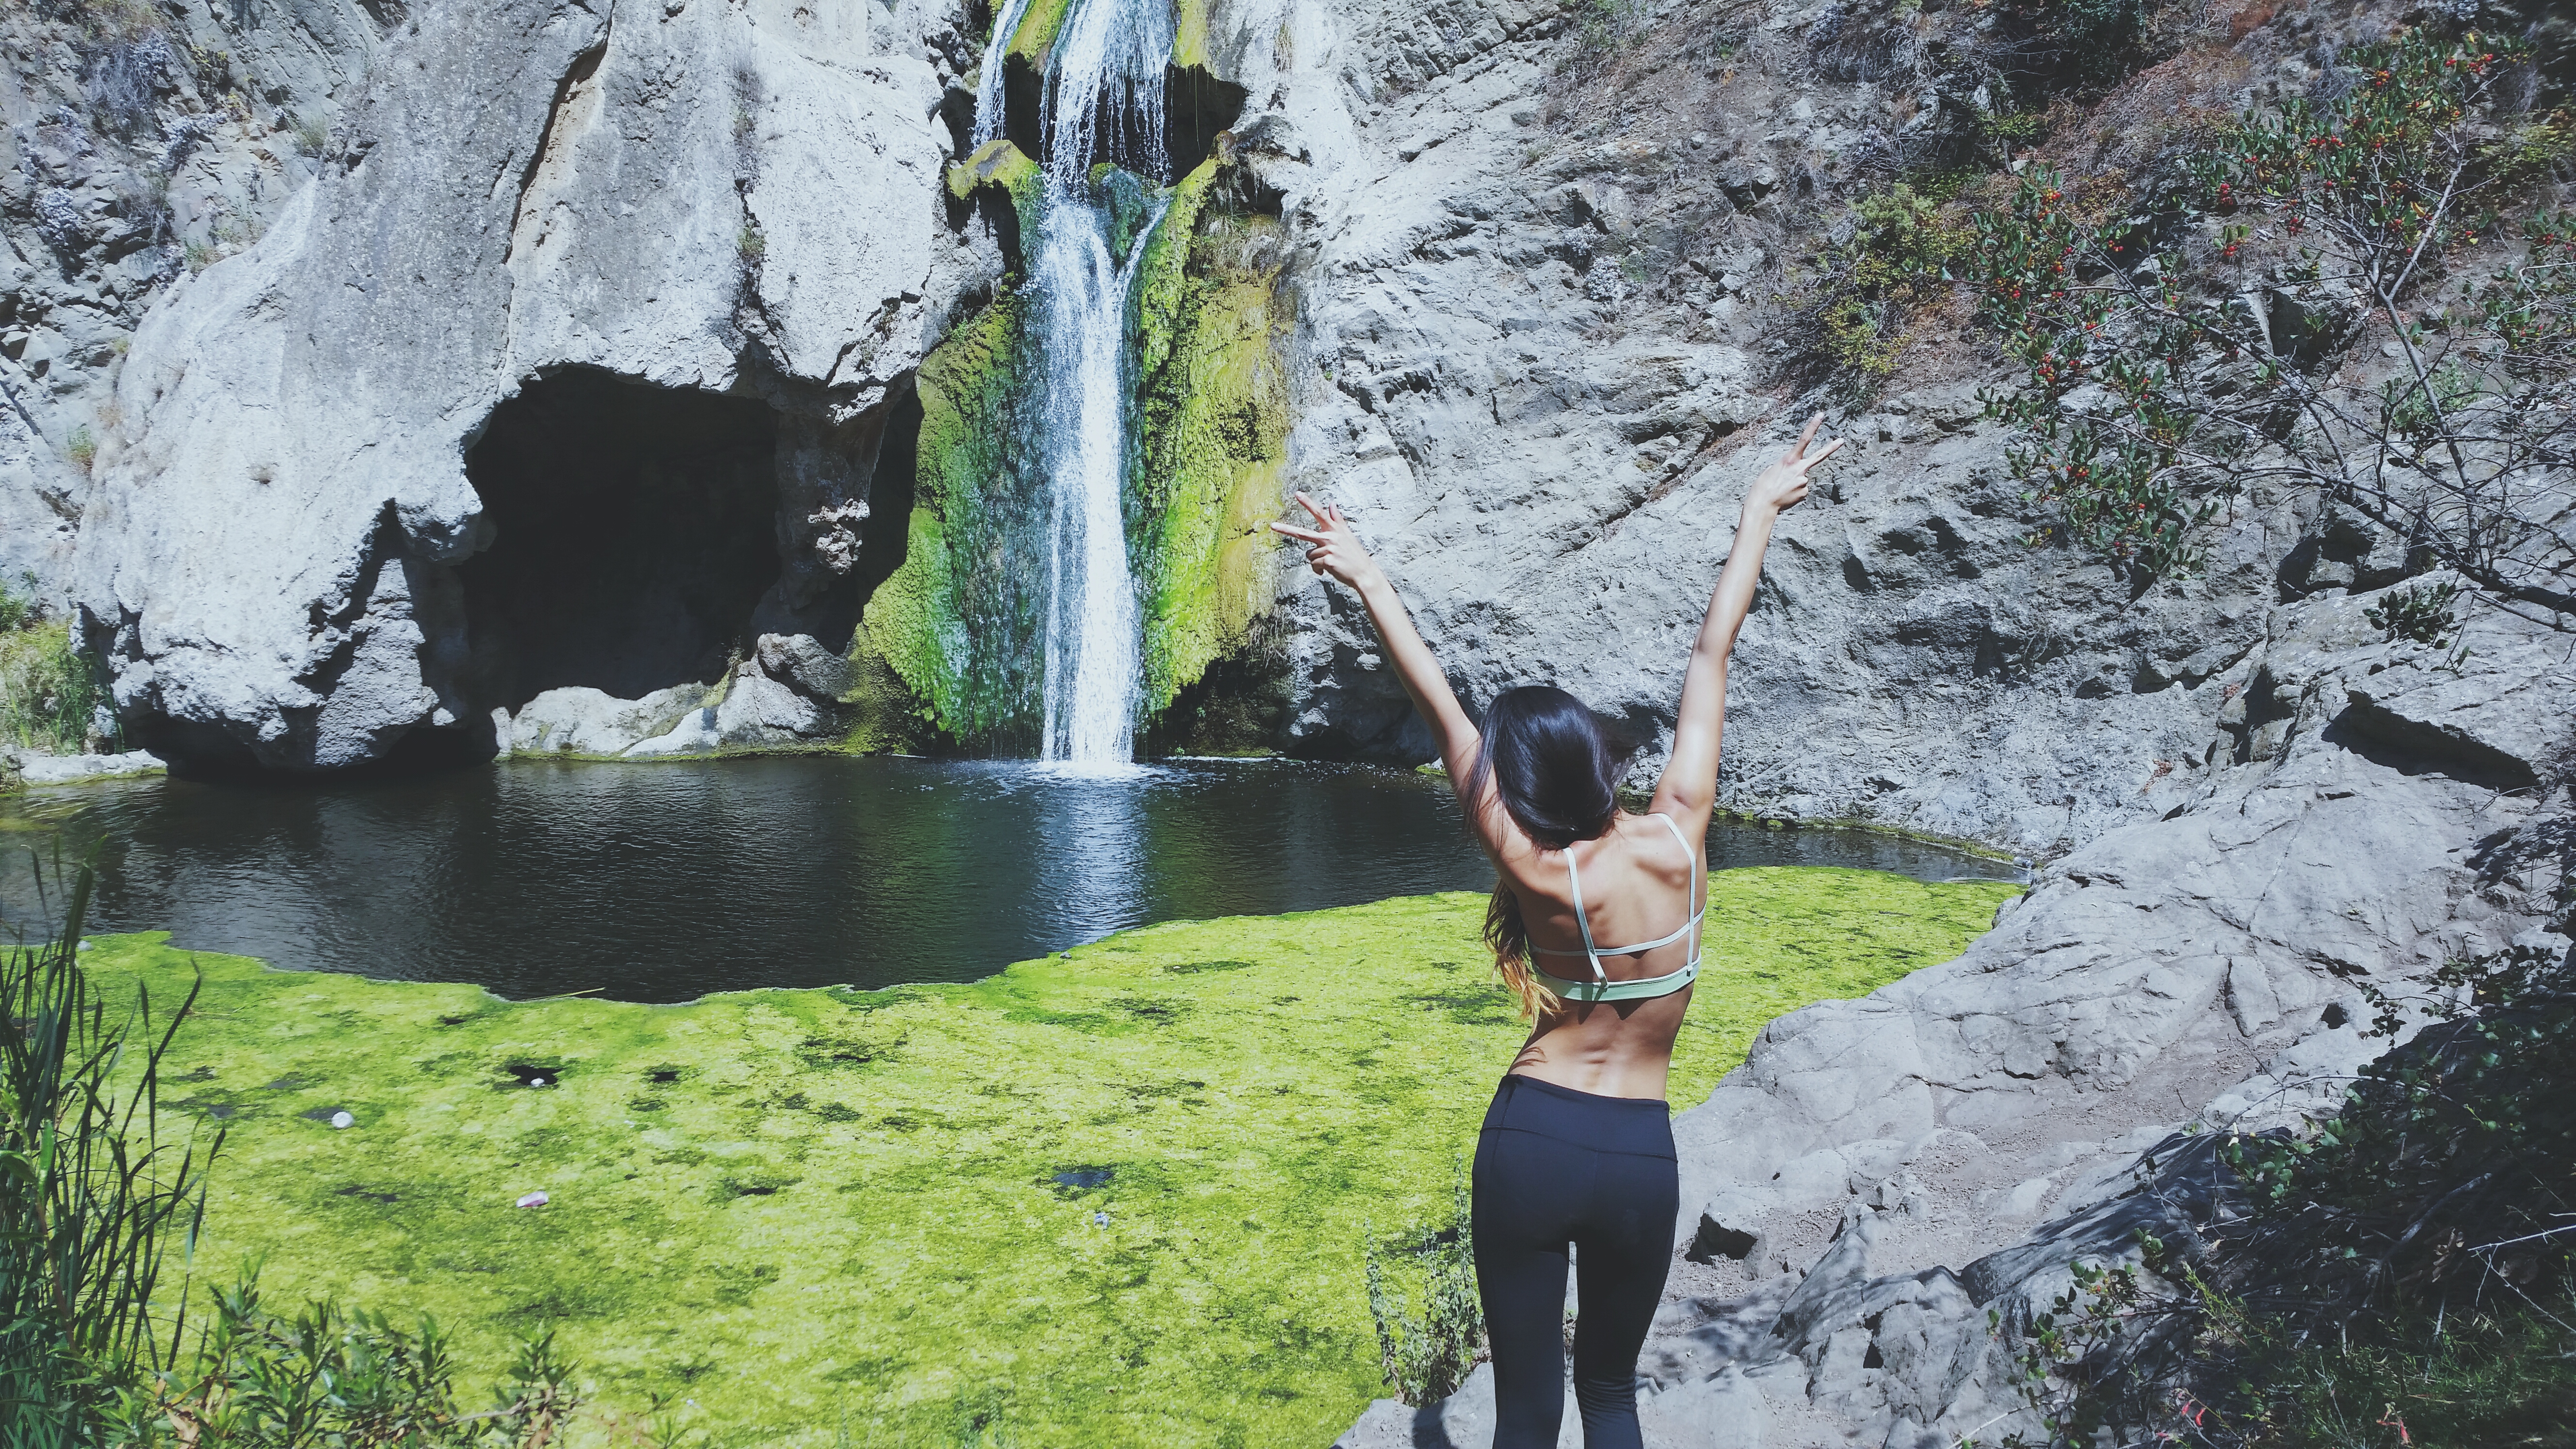 Paradise Falls, California